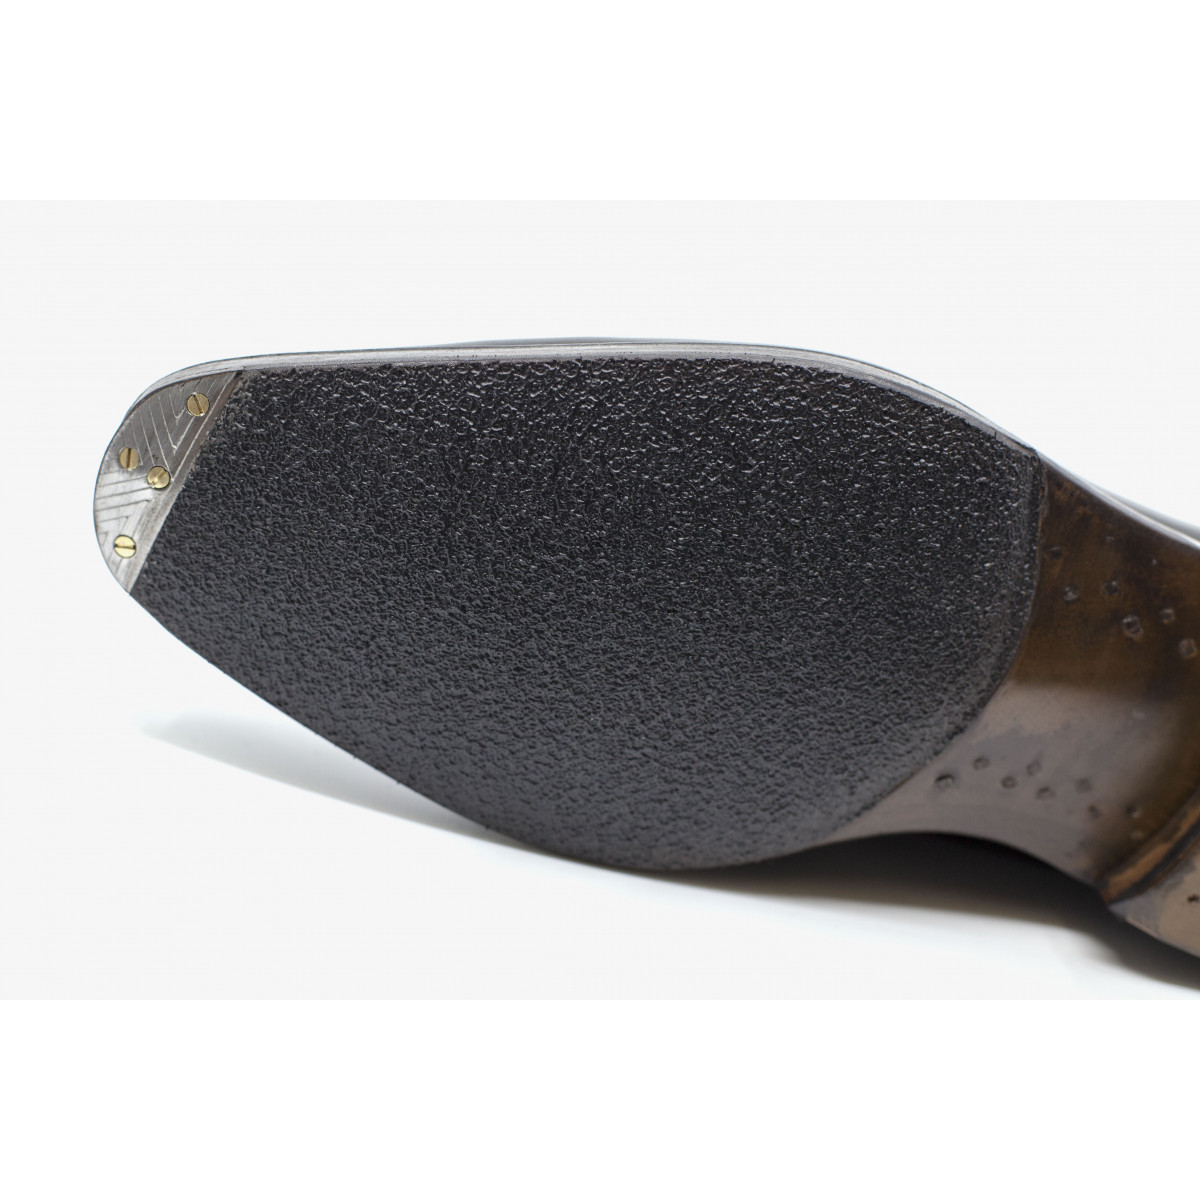 Shoe care Rubber Sole + Metal Toe